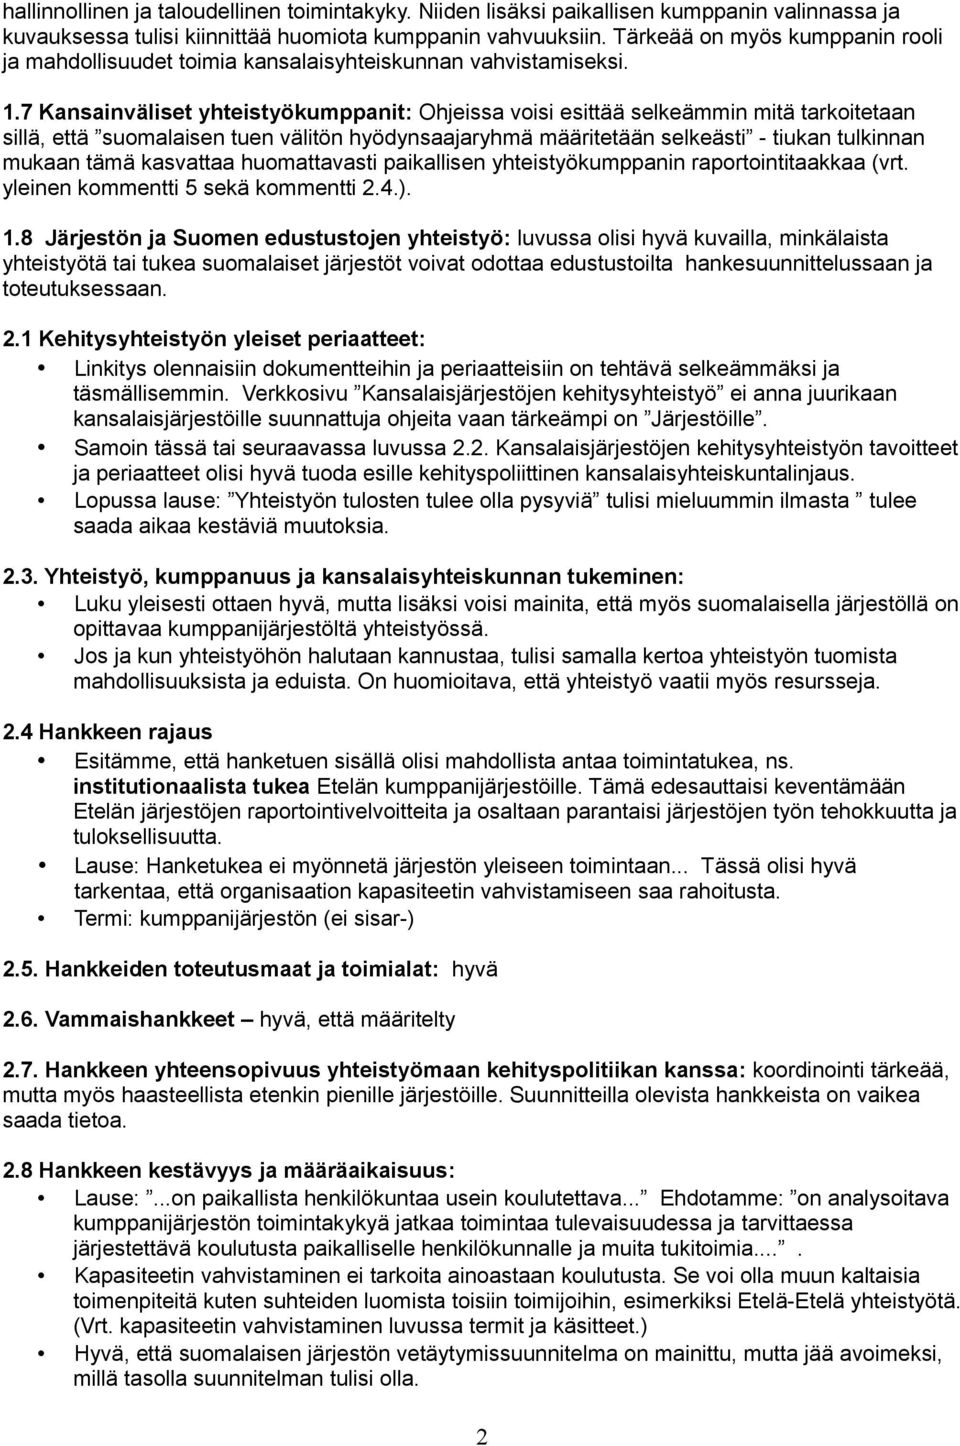 7 Kansainväliset yhteistyökumppanit: Ohjeissa voisi esittää selkeämmin mitä tarkoitetaan sillä, että suomalaisen tuen välitön hyödynsaajaryhmä määritetään selkeästi - tiukan tulkinnan mukaan tämä